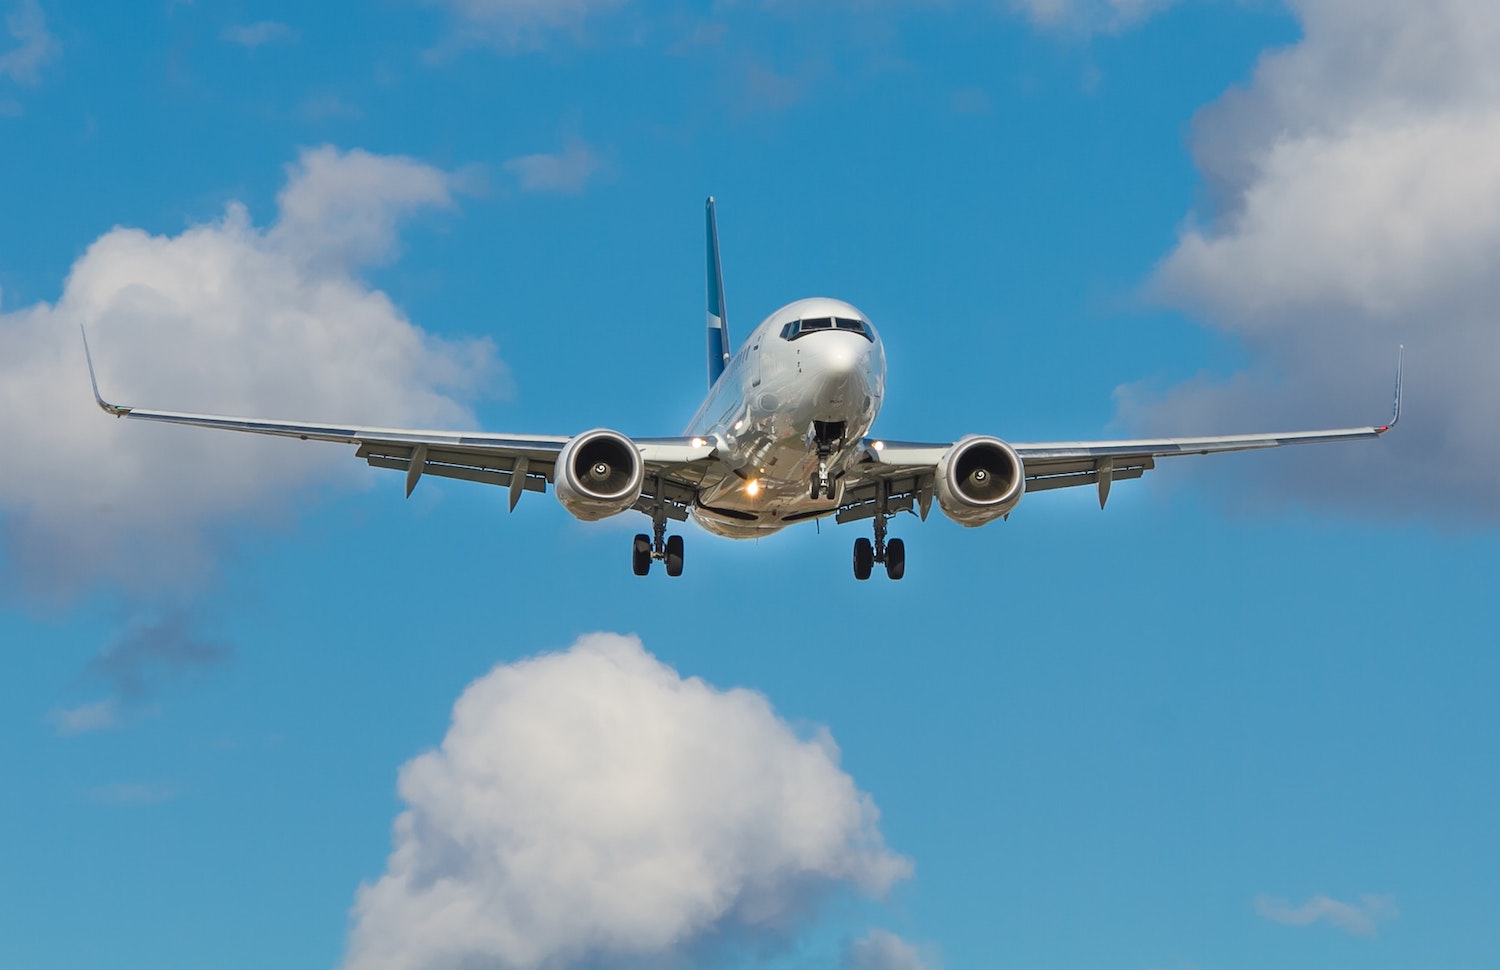 Der Airline-Verband IATA fordert, dass die Corona-Maßnahmen beim Fliegen sofort nach Ende der Pandemie zurückgenommen werden. Foto: Unsplash